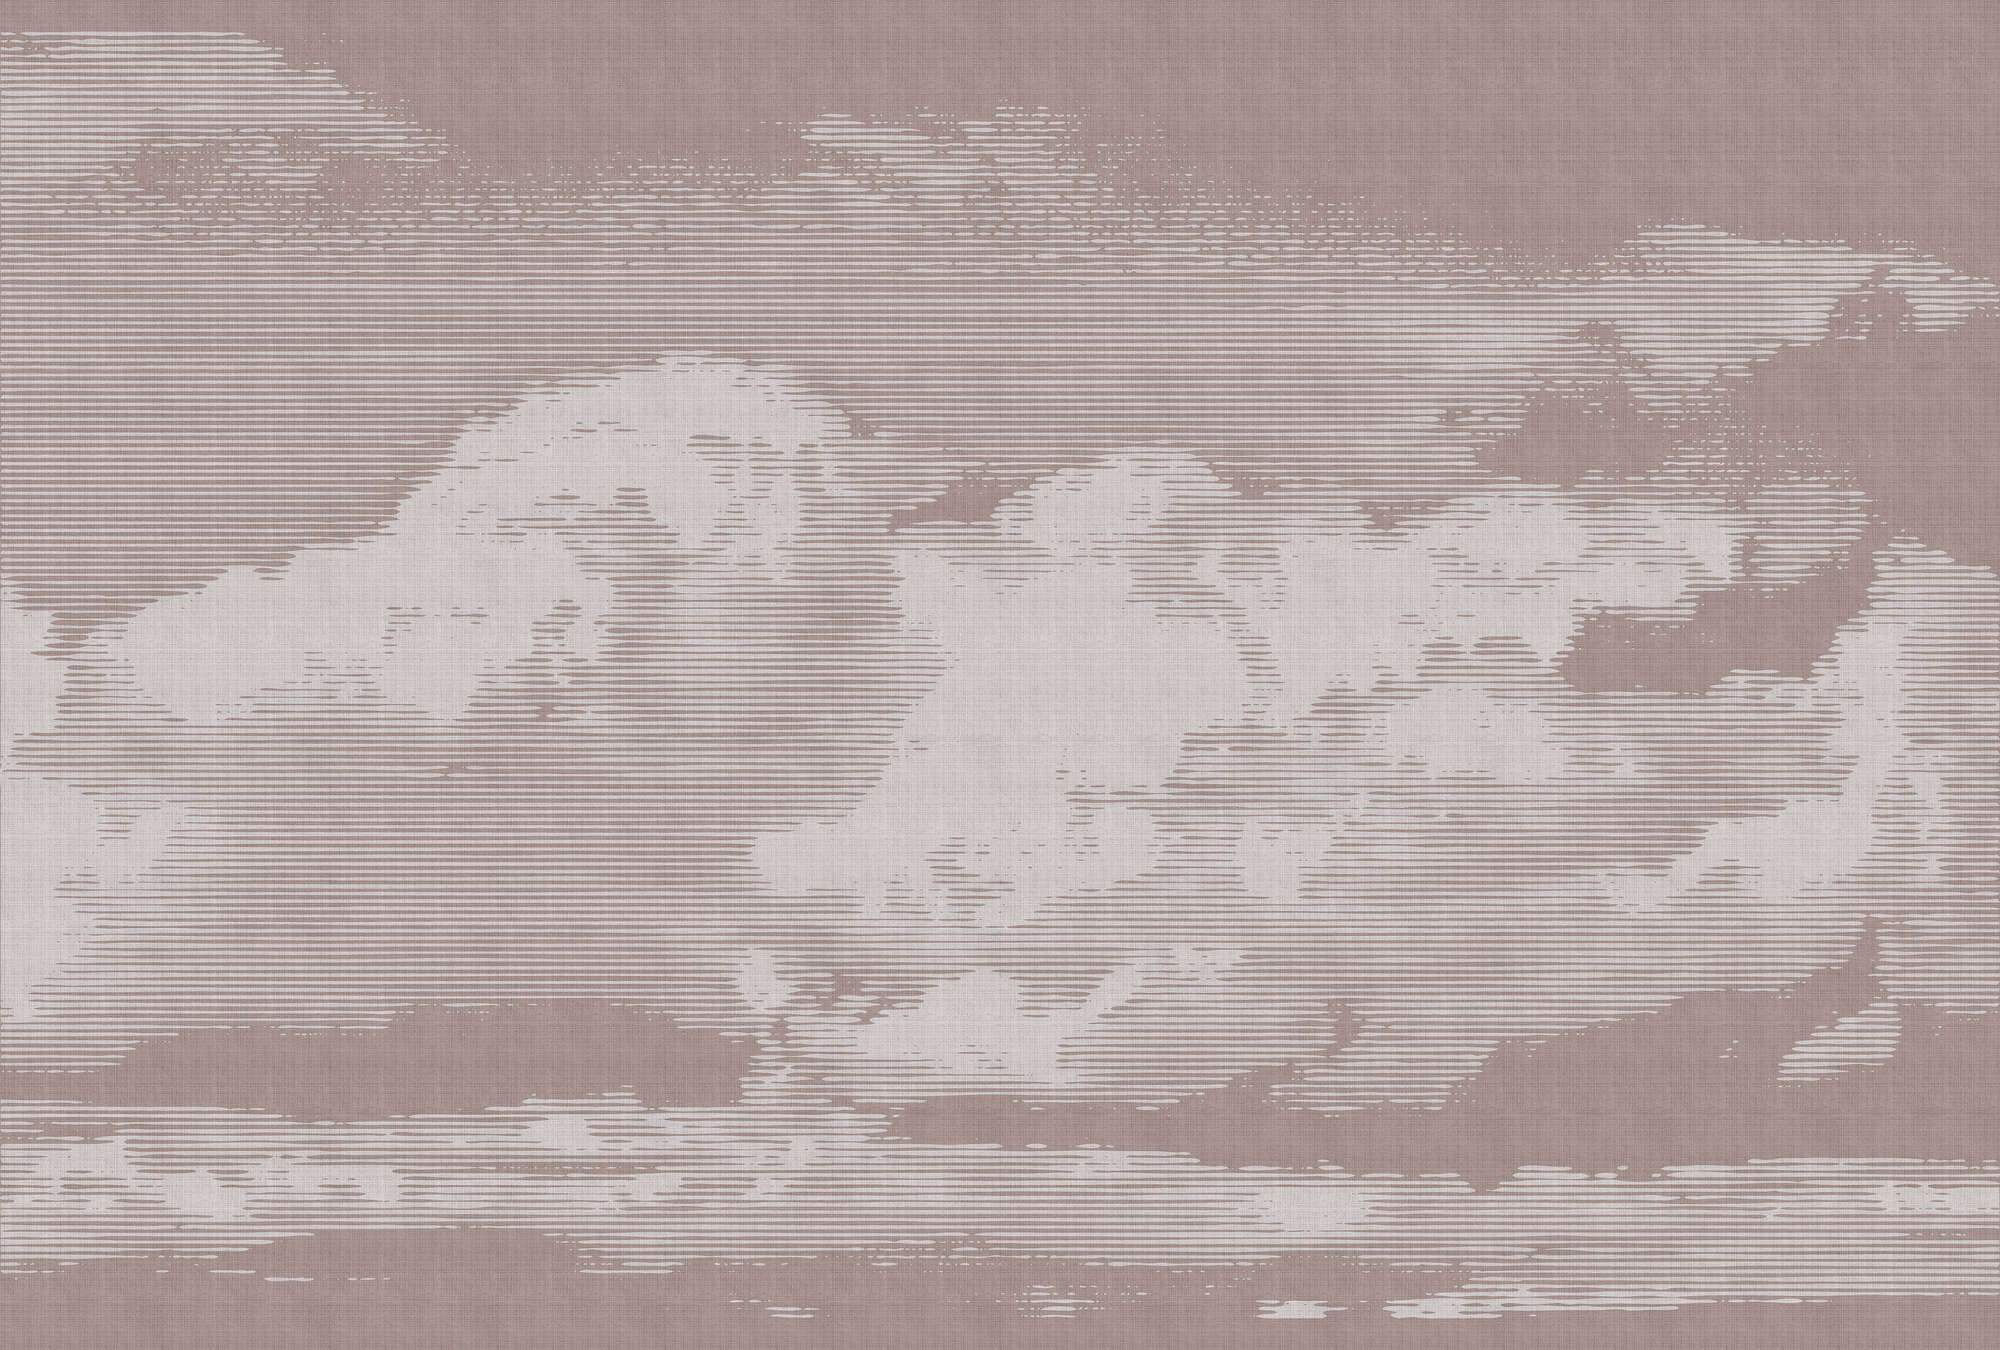             Nubes 3 - Papel pintado con motivo de nubes - Estructura de lino natural - Gris, Rosa | Liso mate
        